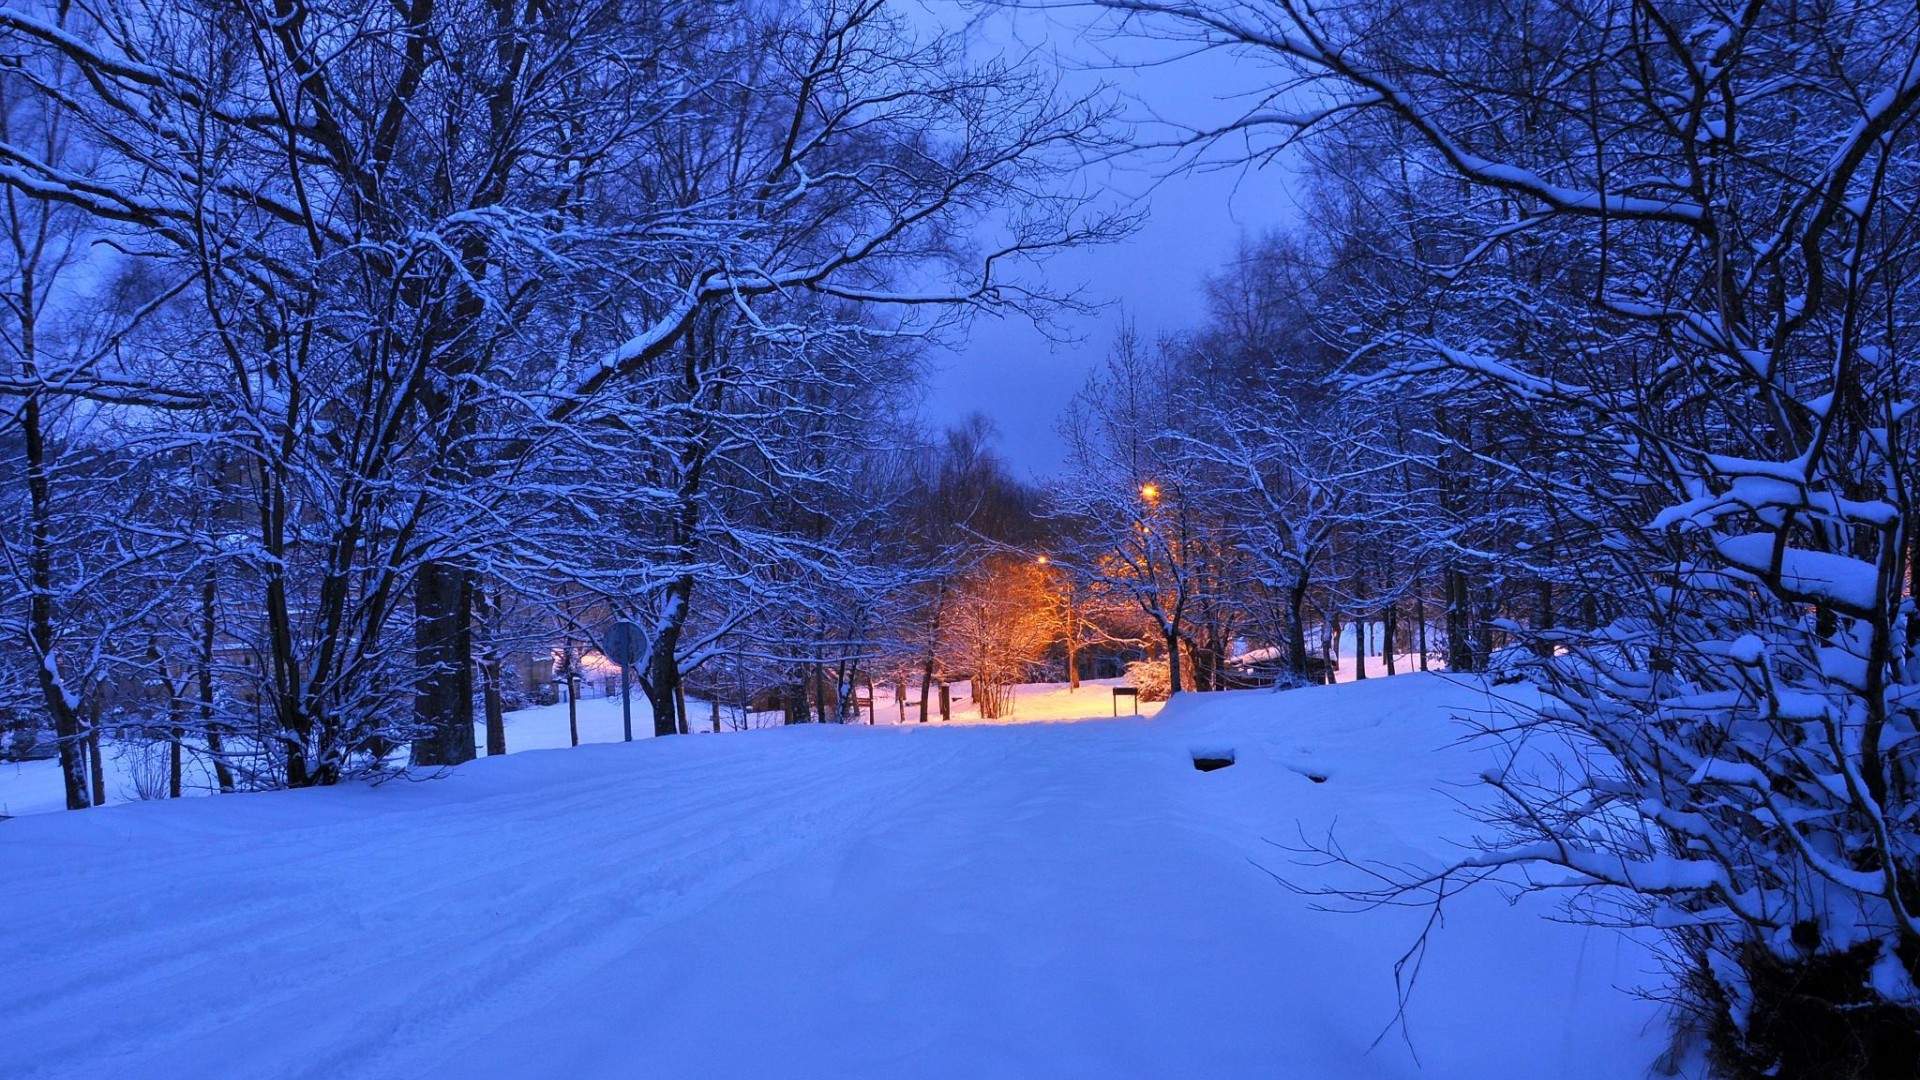 夜 晚上 光 灯 冬天 公路图片 风景壁纸 风景壁纸 壁纸下载 彼岸桌面